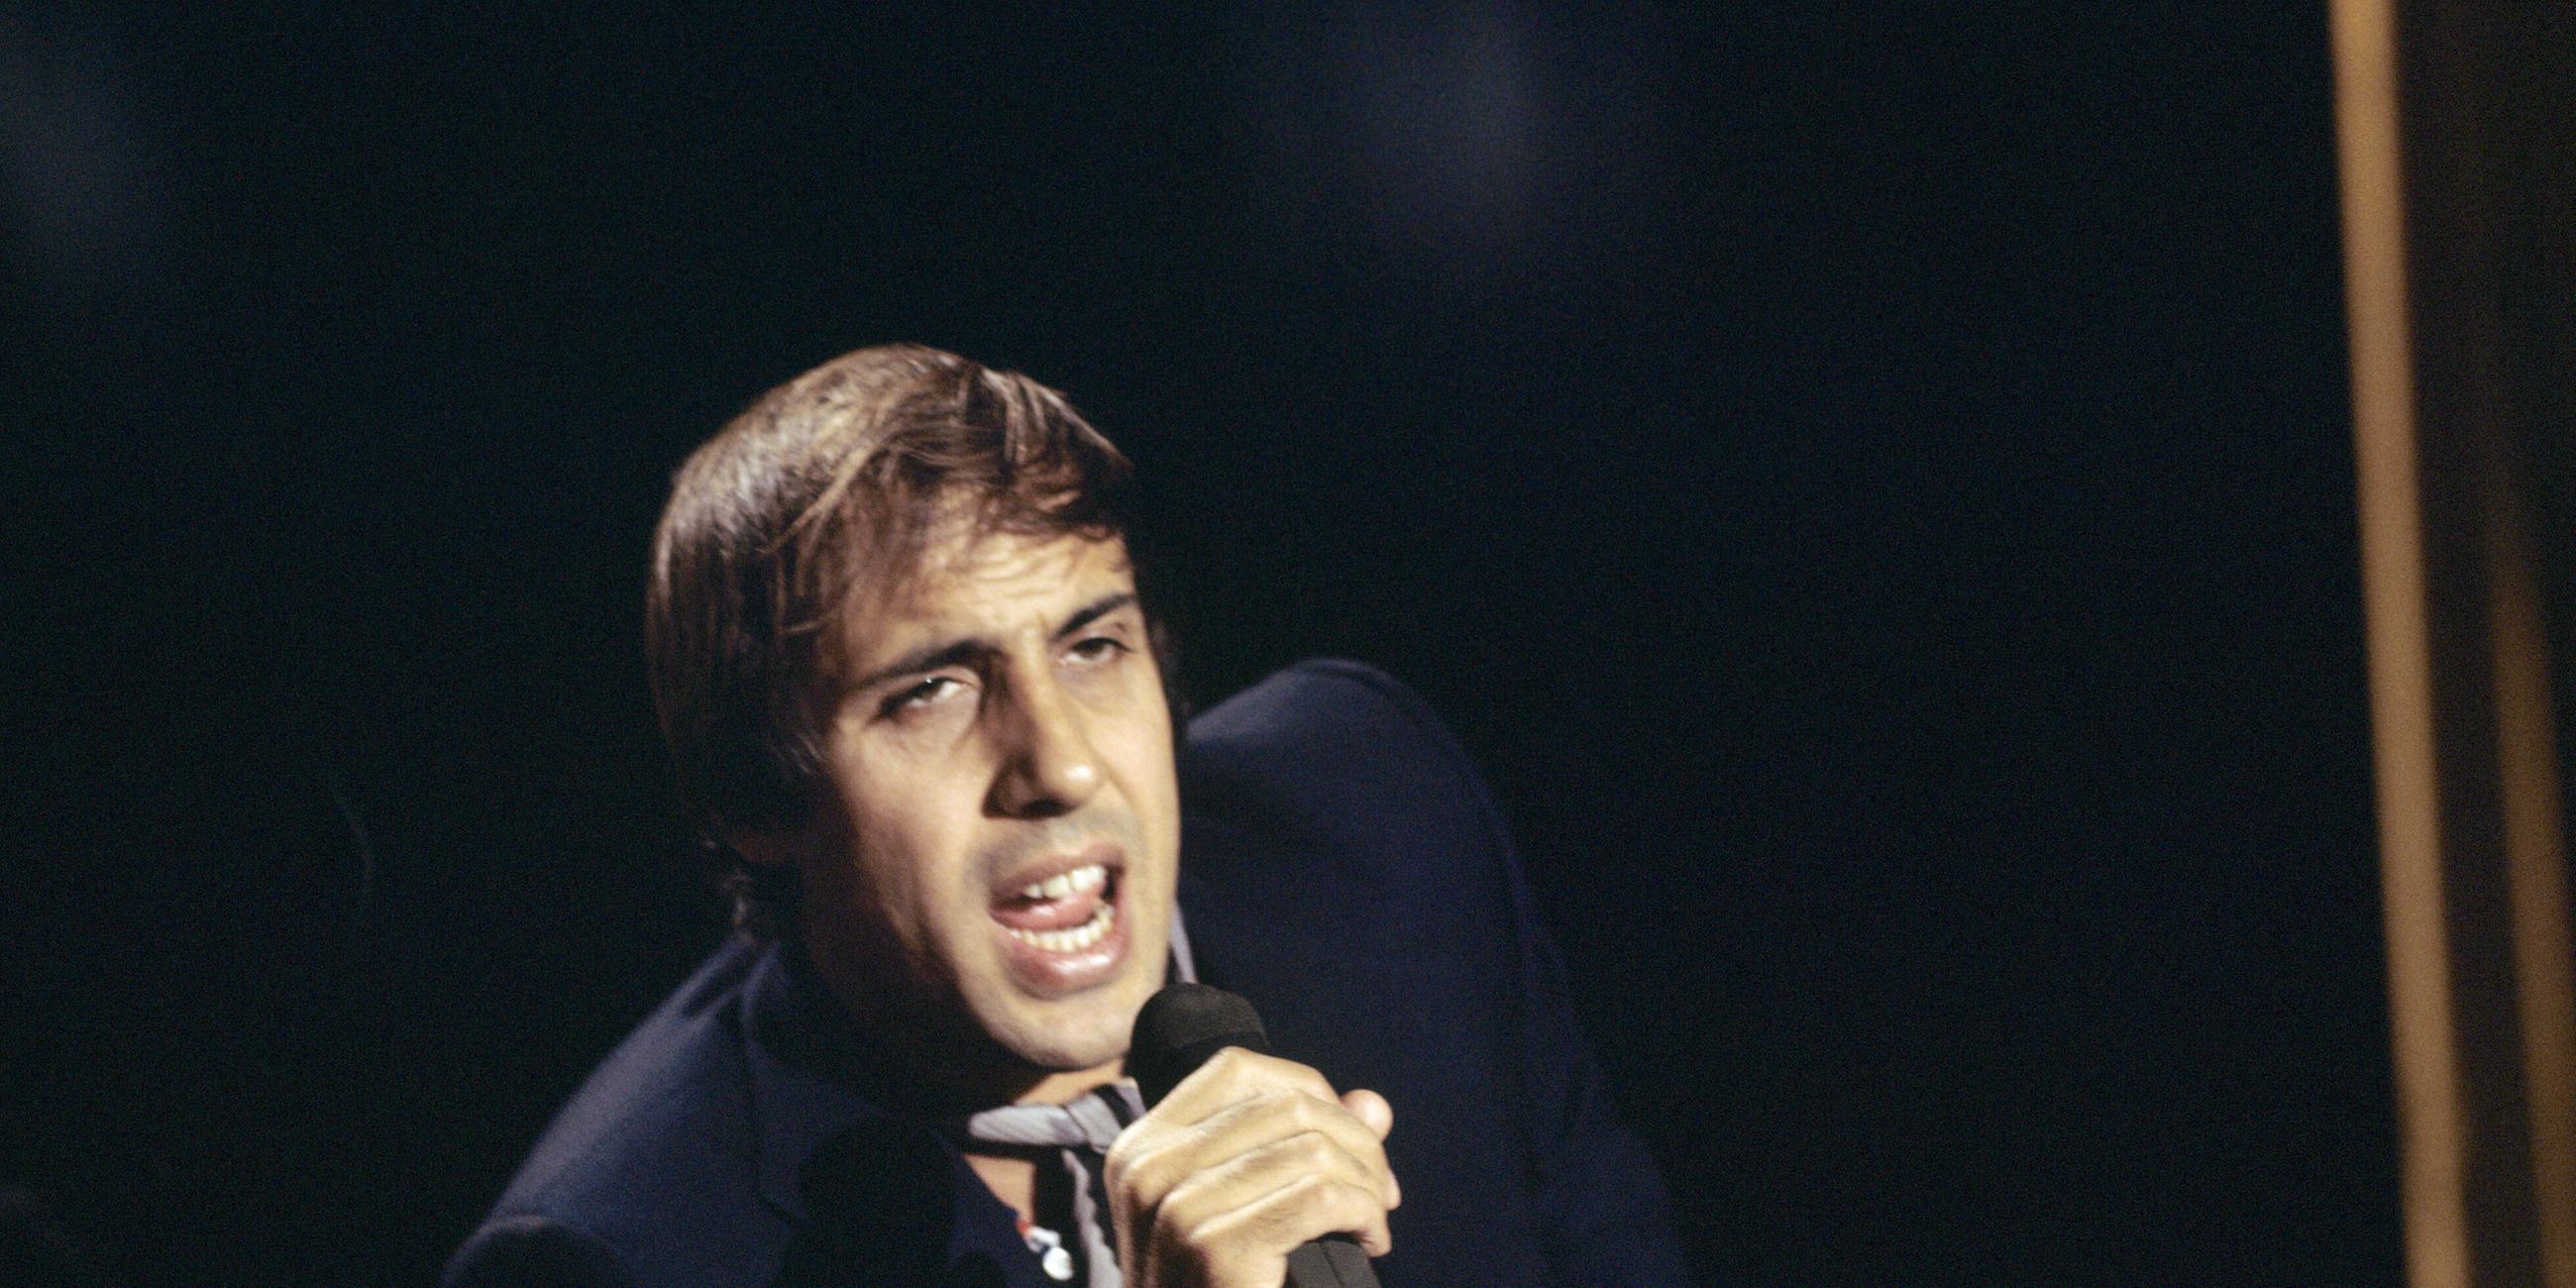 Italienischer Sänger und Schauspieler Adriano Celentano, aufgenommen im ZDF-Nightclub am 07.10.1970 in Deutschland